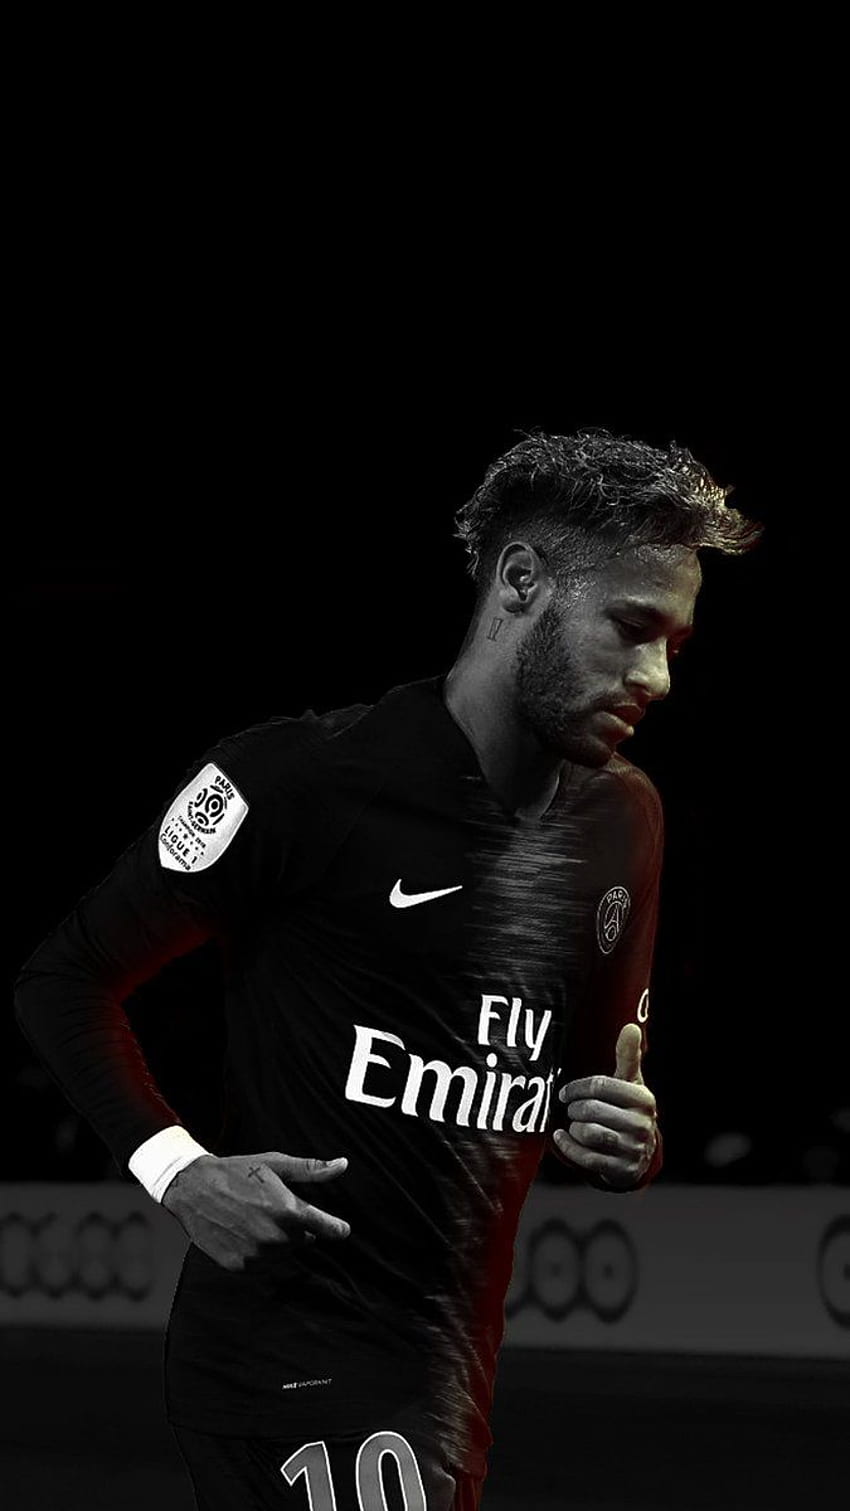 Neymar 2019 HD wallpaper – nếu bạn là fan hâm mộ của cầu thủ Neymar thì đây là điều không thể bỏ qua. Hãy tải những hình ảnh HD chất lượng cao về Neymar để làm hình nền cho điện thoại hoặc máy tính của bạn nhé!